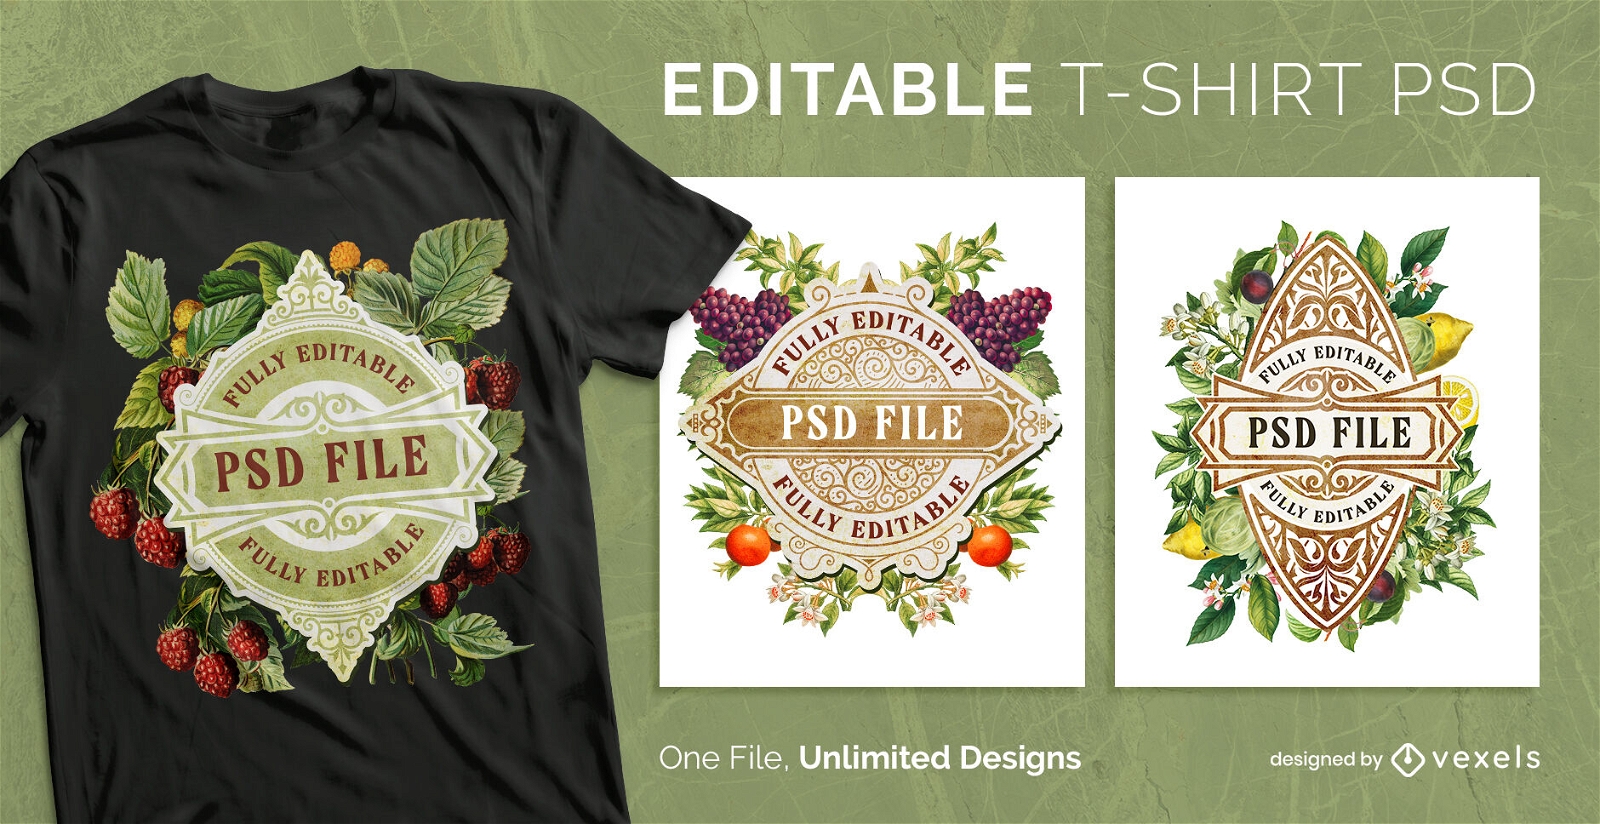 Vintage fruit label scalable t-shirt psd